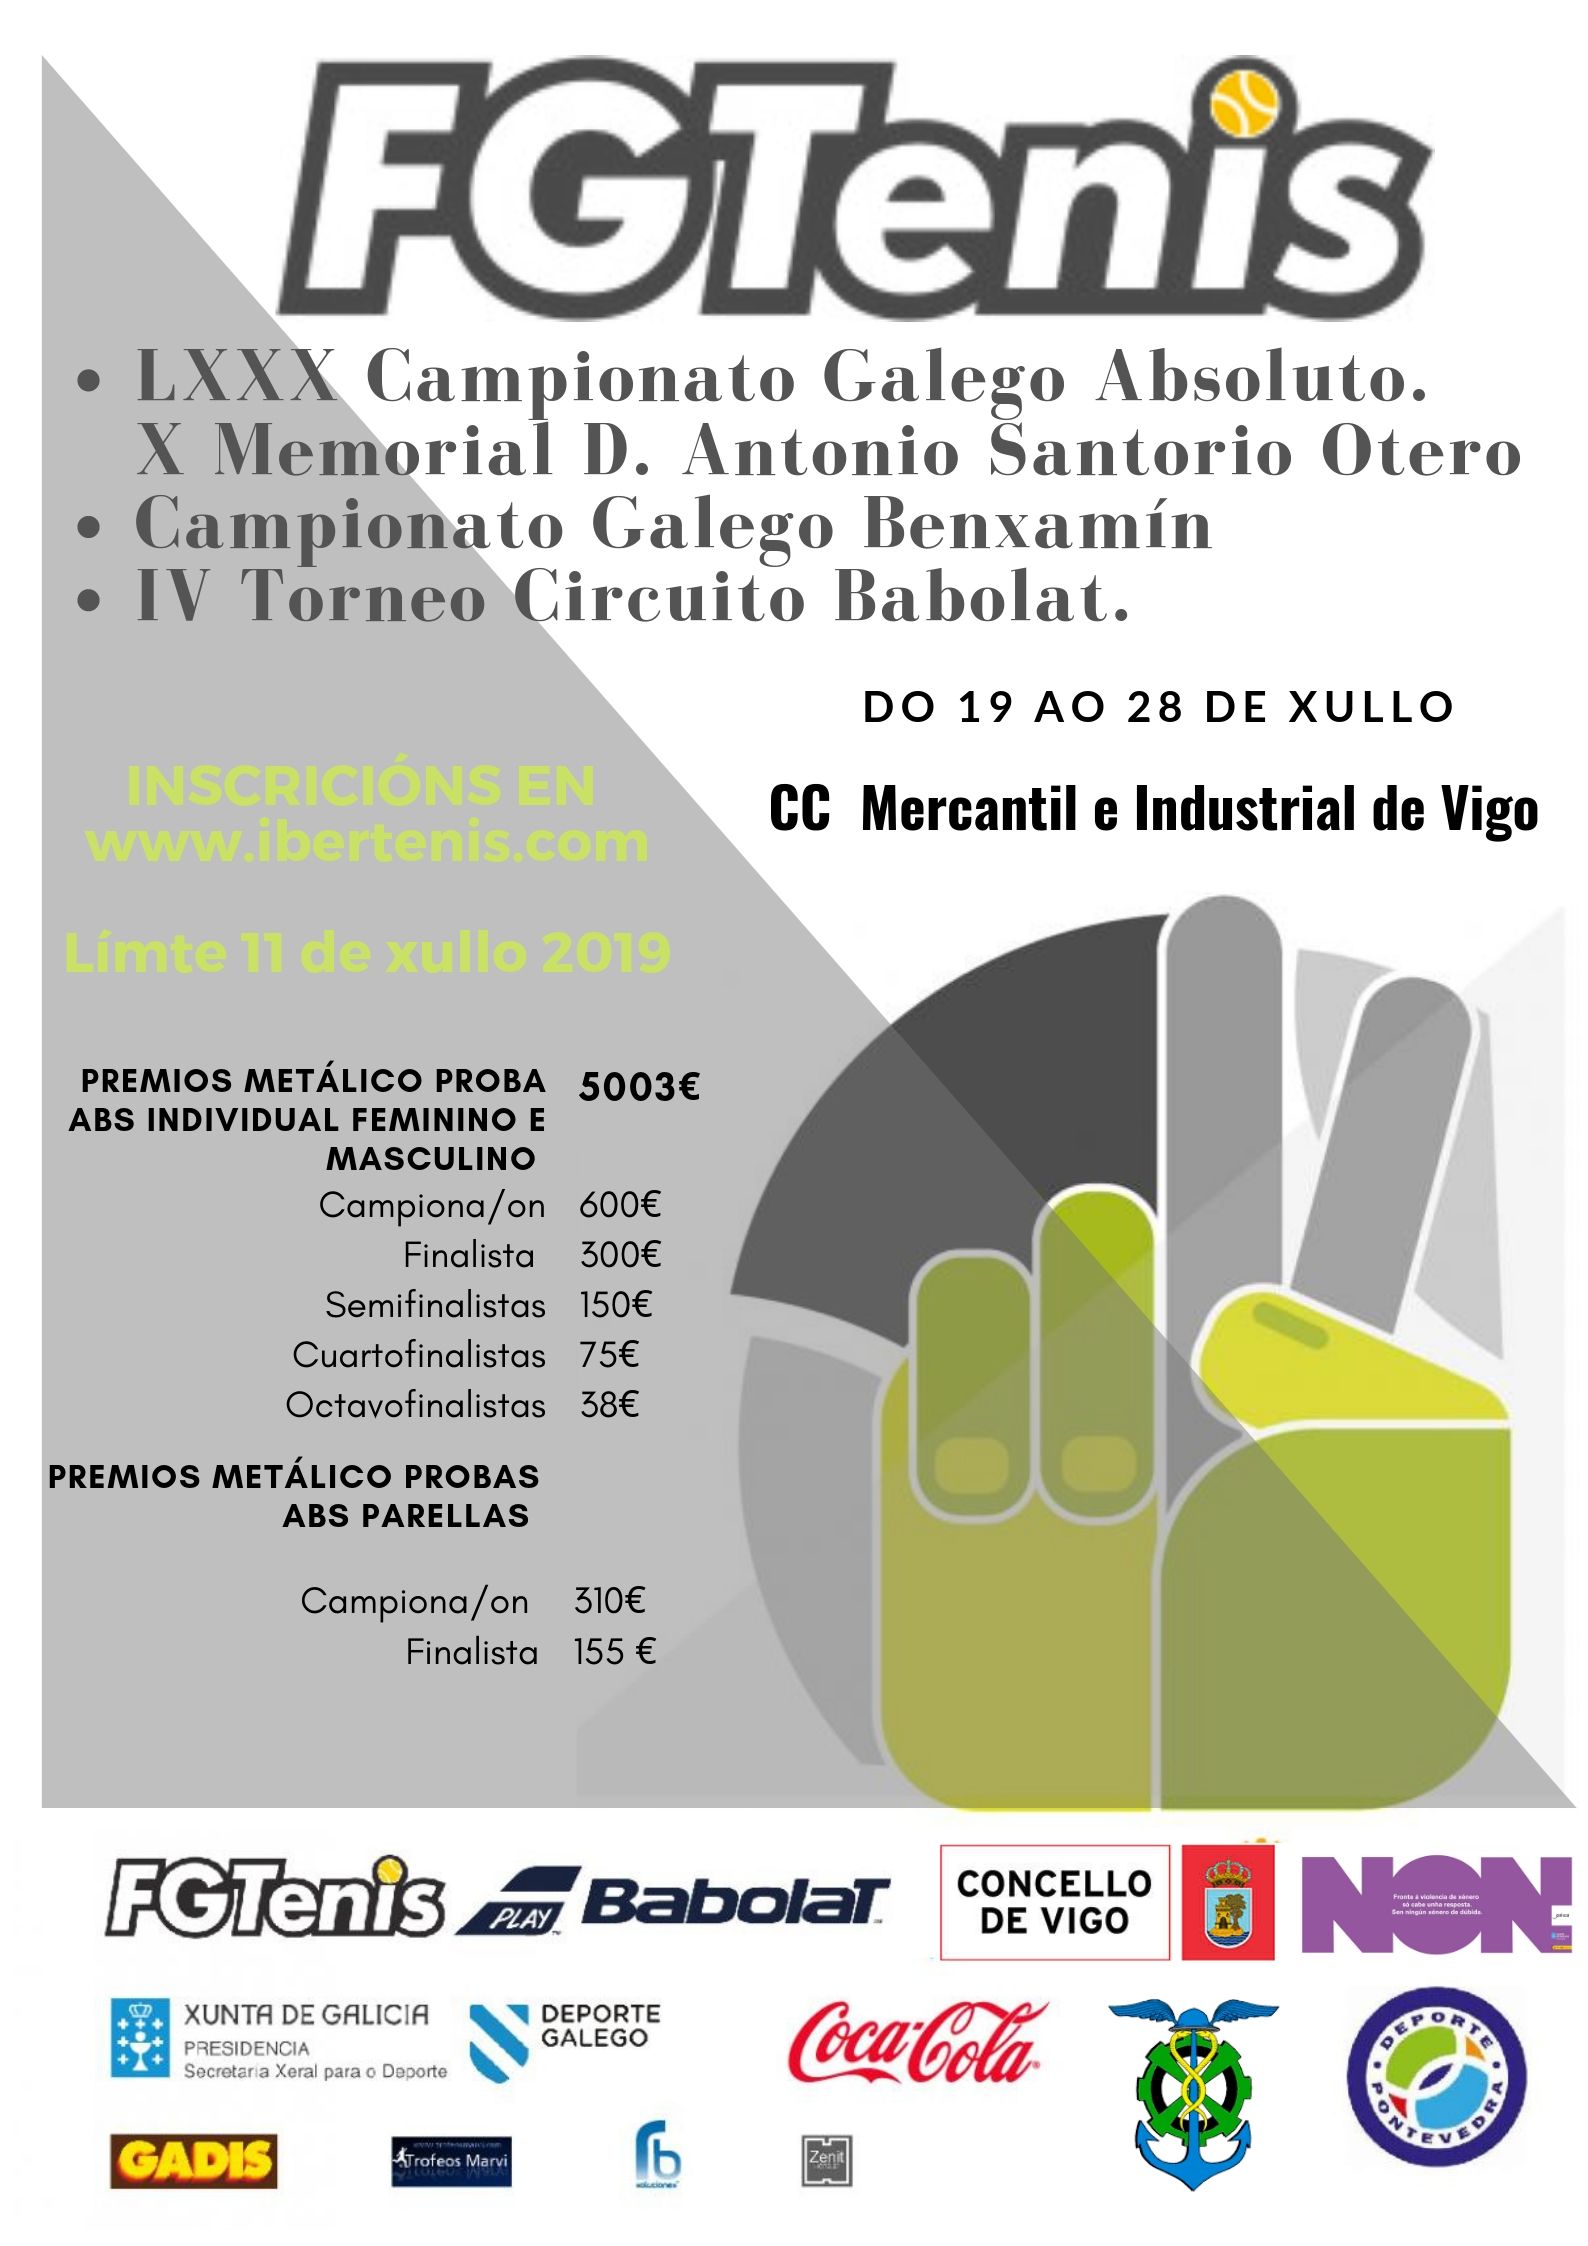 LXXX CAMPIONATO GALEGO ABSOLUTO/ CAMPIONATO GALEGO BENXAMÍN/ V PRUEBA CIRCUITO BABOLAT. 